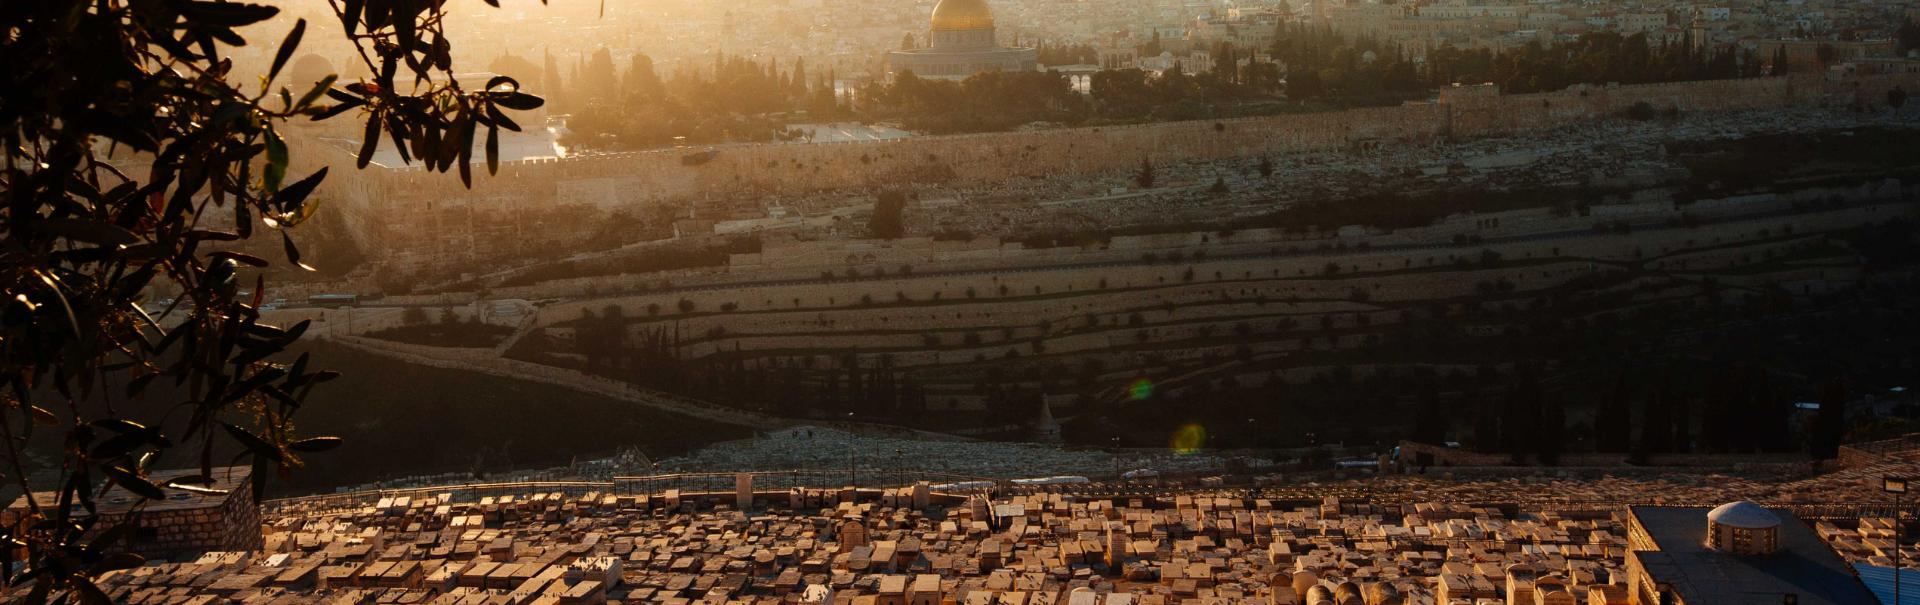 עולים להר הזיתים - סדרת סיורים חדשה מבית עיר דוד